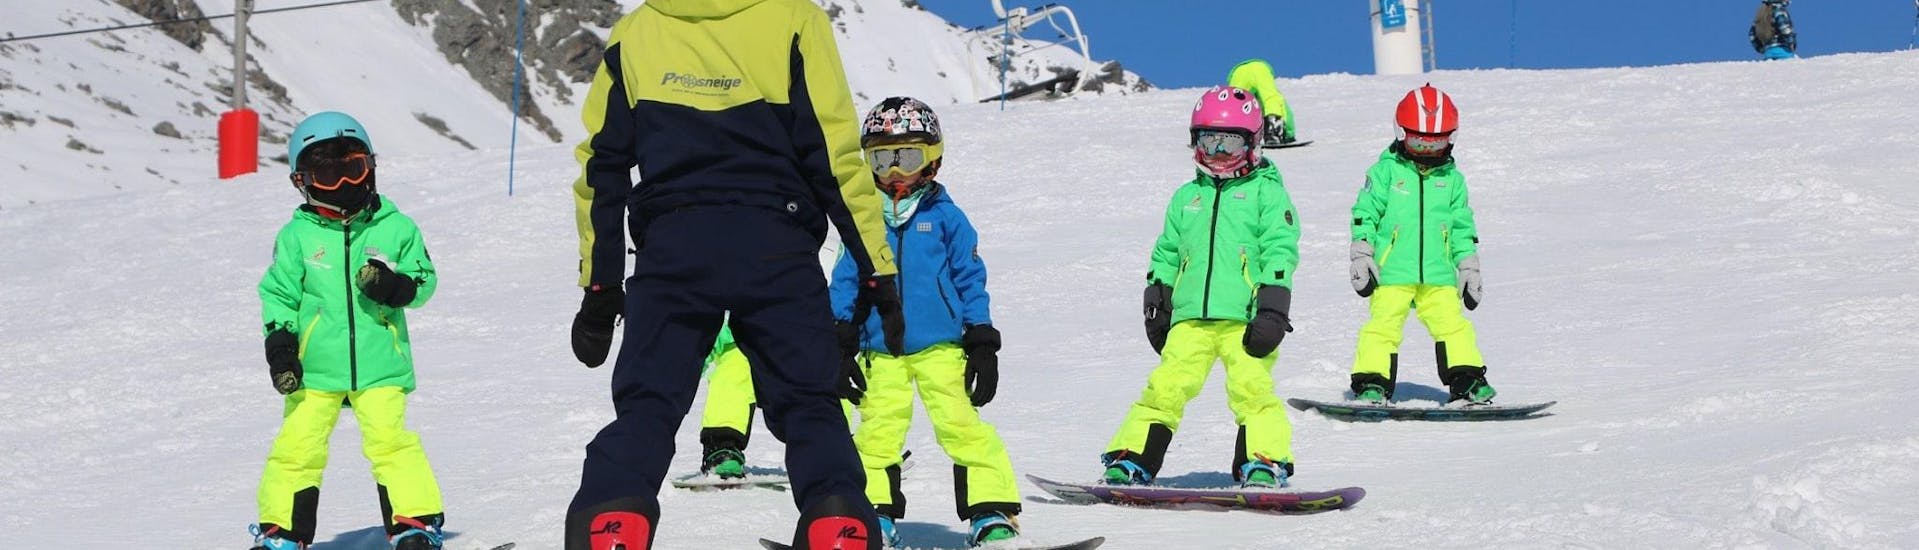 Ein Skilehrer der Skischule Prosneige Alpe d'Huez unterrichtet lachende Kinder während des Snowboardunterrichts für Kinder jeden Alters und jeden Levels.